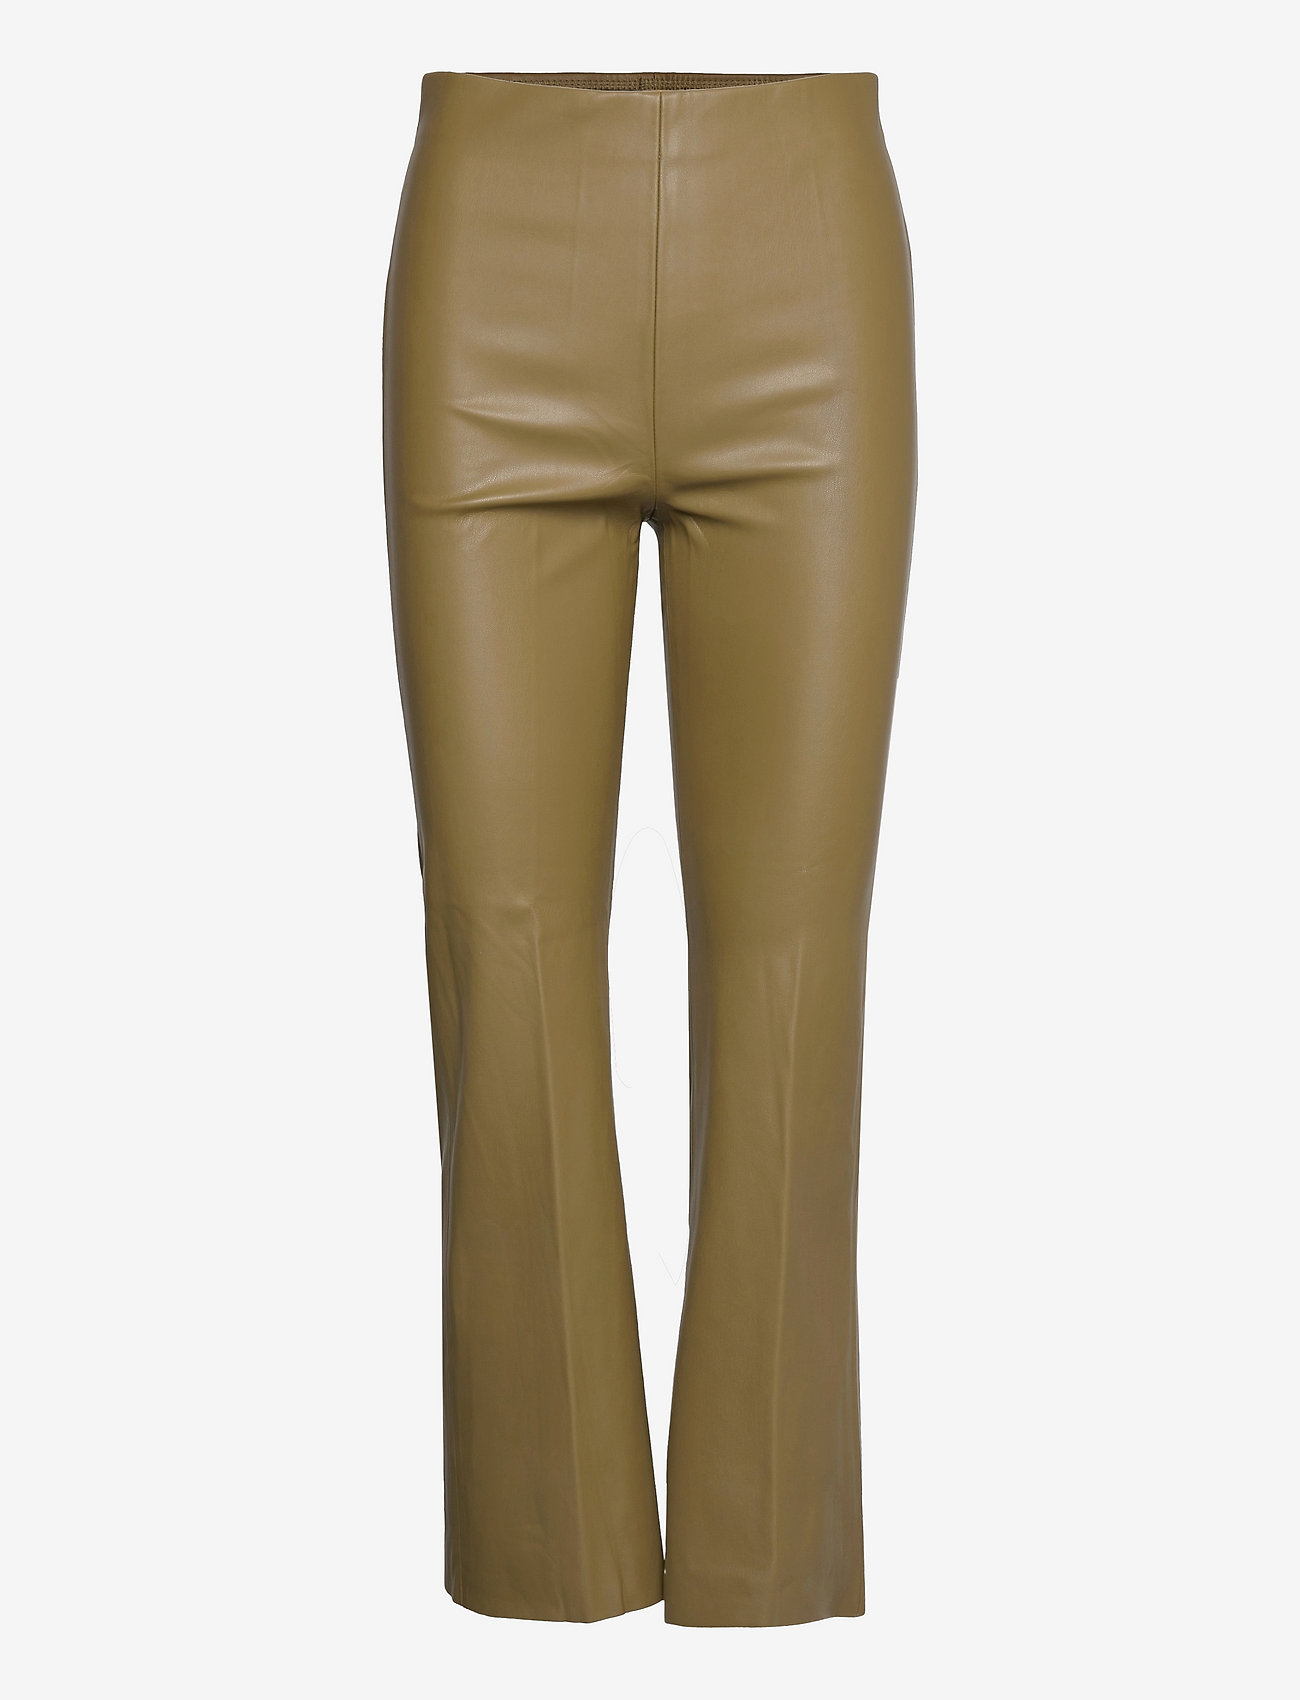 Soaked in Luxury - SLKaylee PU Kickflare Pants - odzież imprezowa w cenach outletowych - martini olive - 0